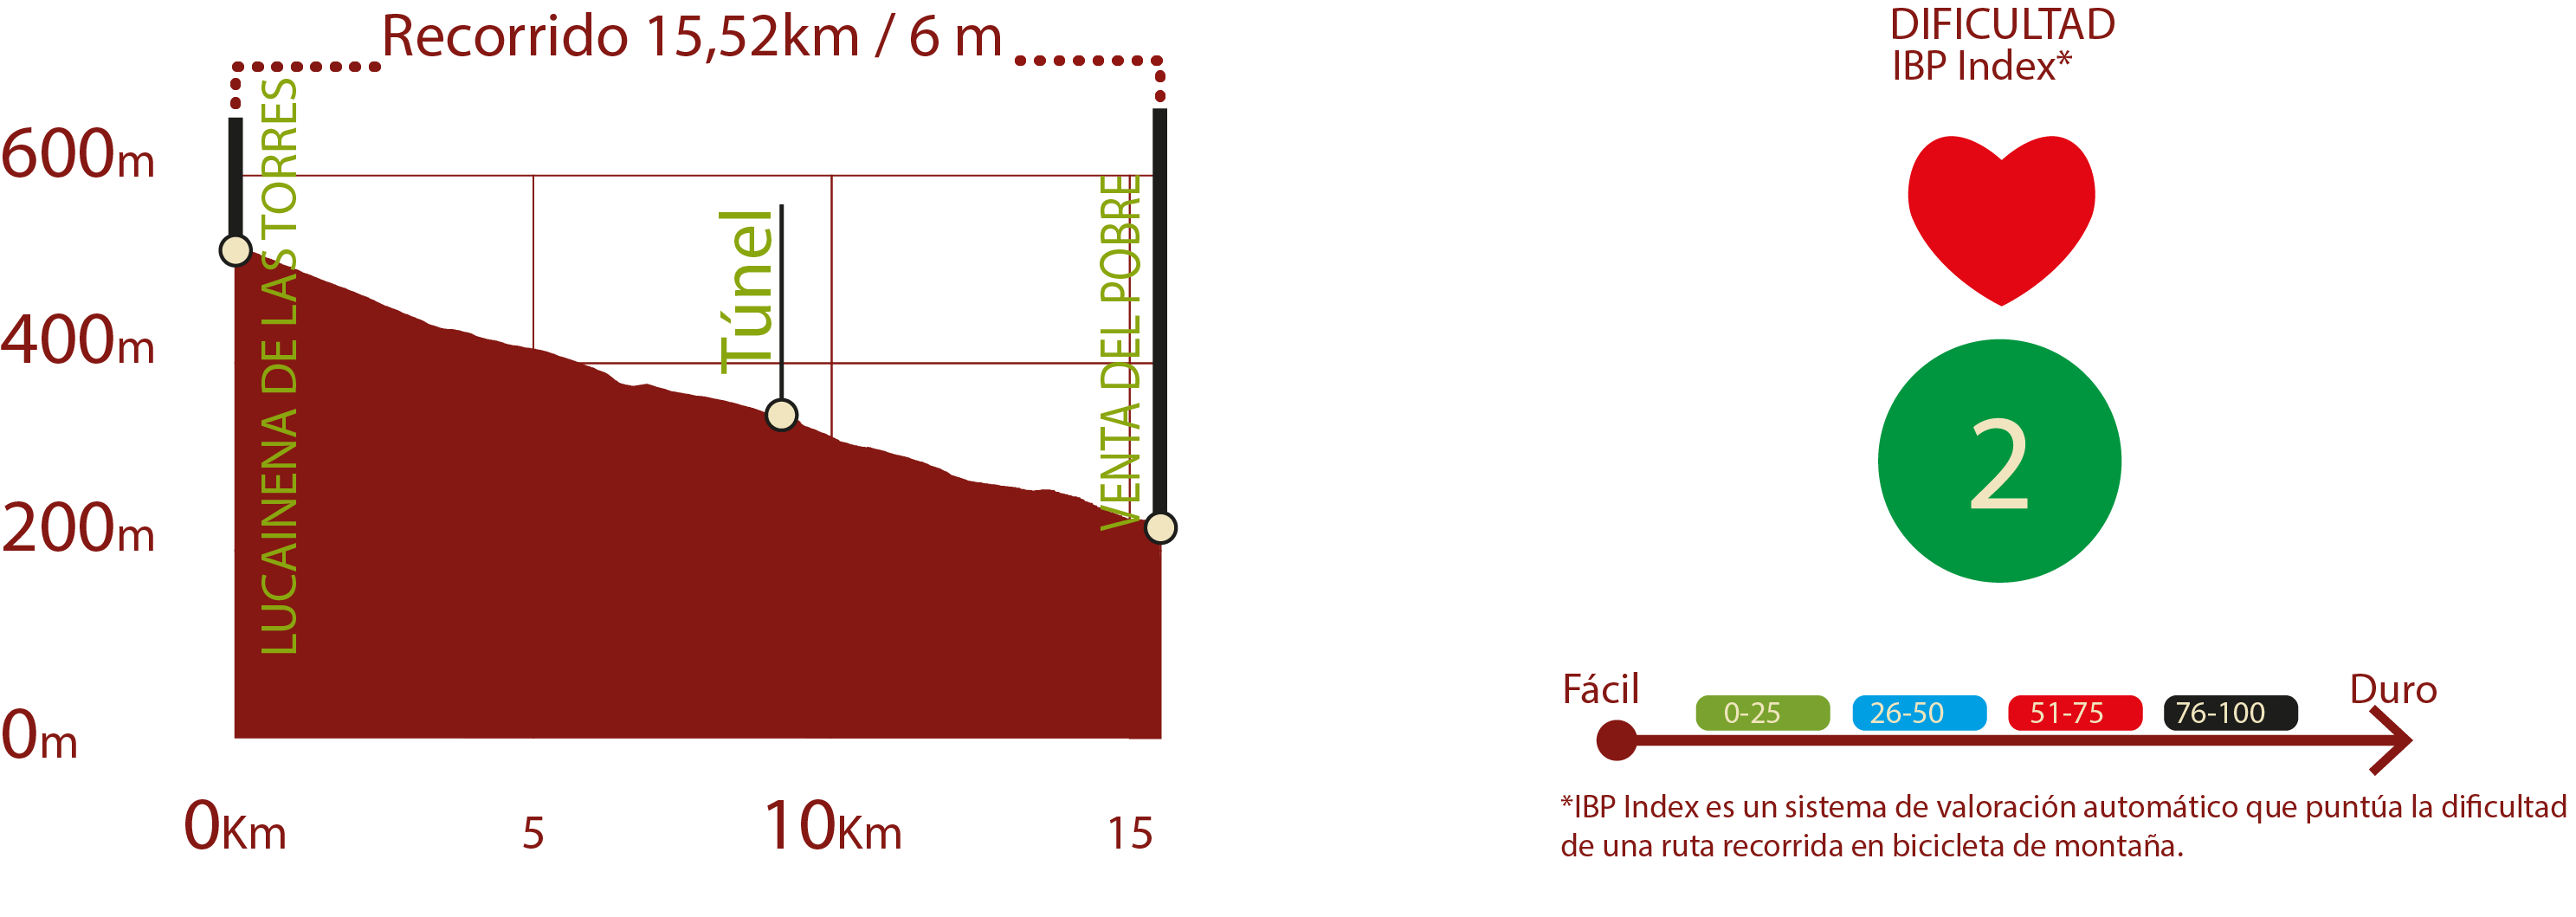 Perfil e IBP
Perfil del recorrido del CN de Lucainena de las Torres a Agua Amarga: 15,52 km / Desnivel de subida 6 m
IBP 2: Fácil

